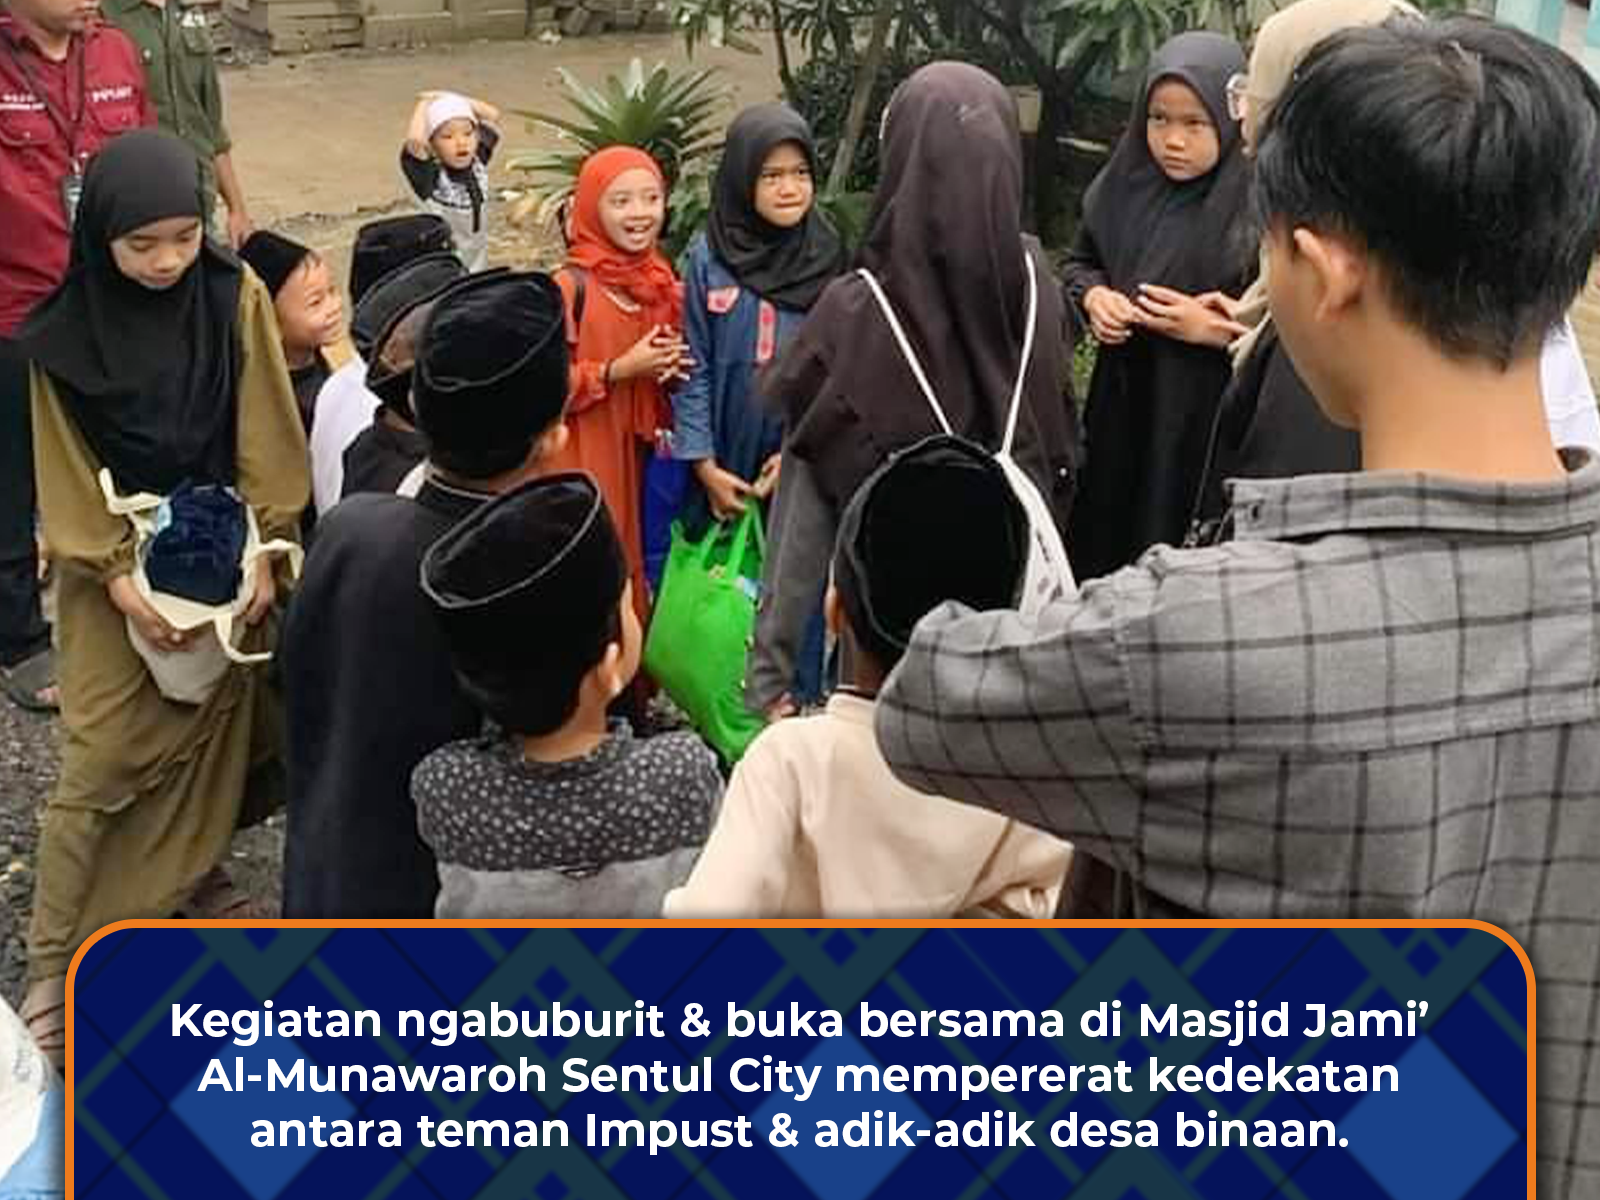 UKM Impust Adakan Ngabuburit & Buka Bersama Adik-Adik Desa Binaan di Masjid Al-Munawaroh Sentul City